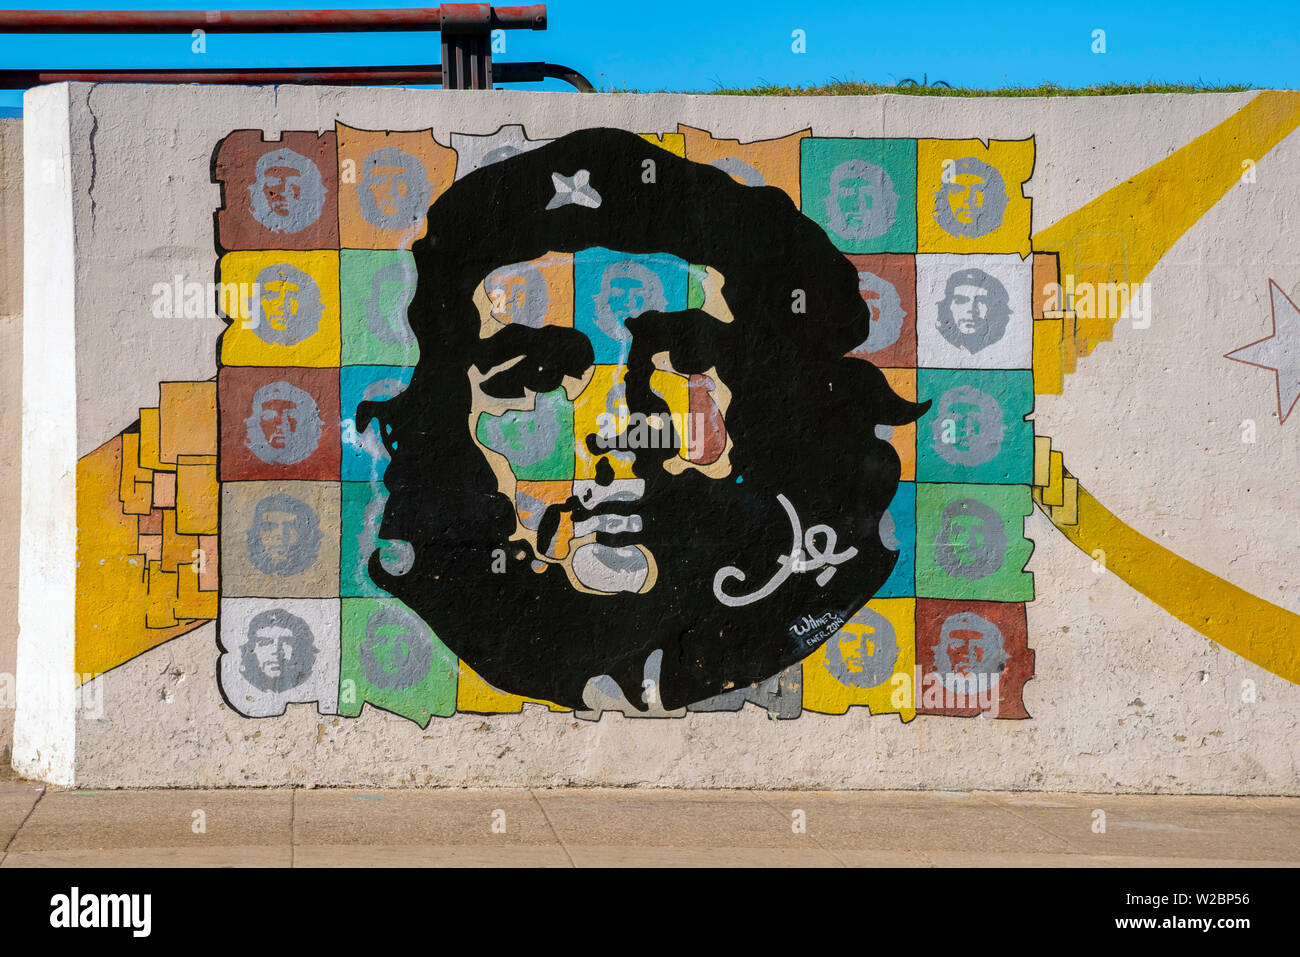 Cuba, La Habana, el Che Guevara mural Foto de stock